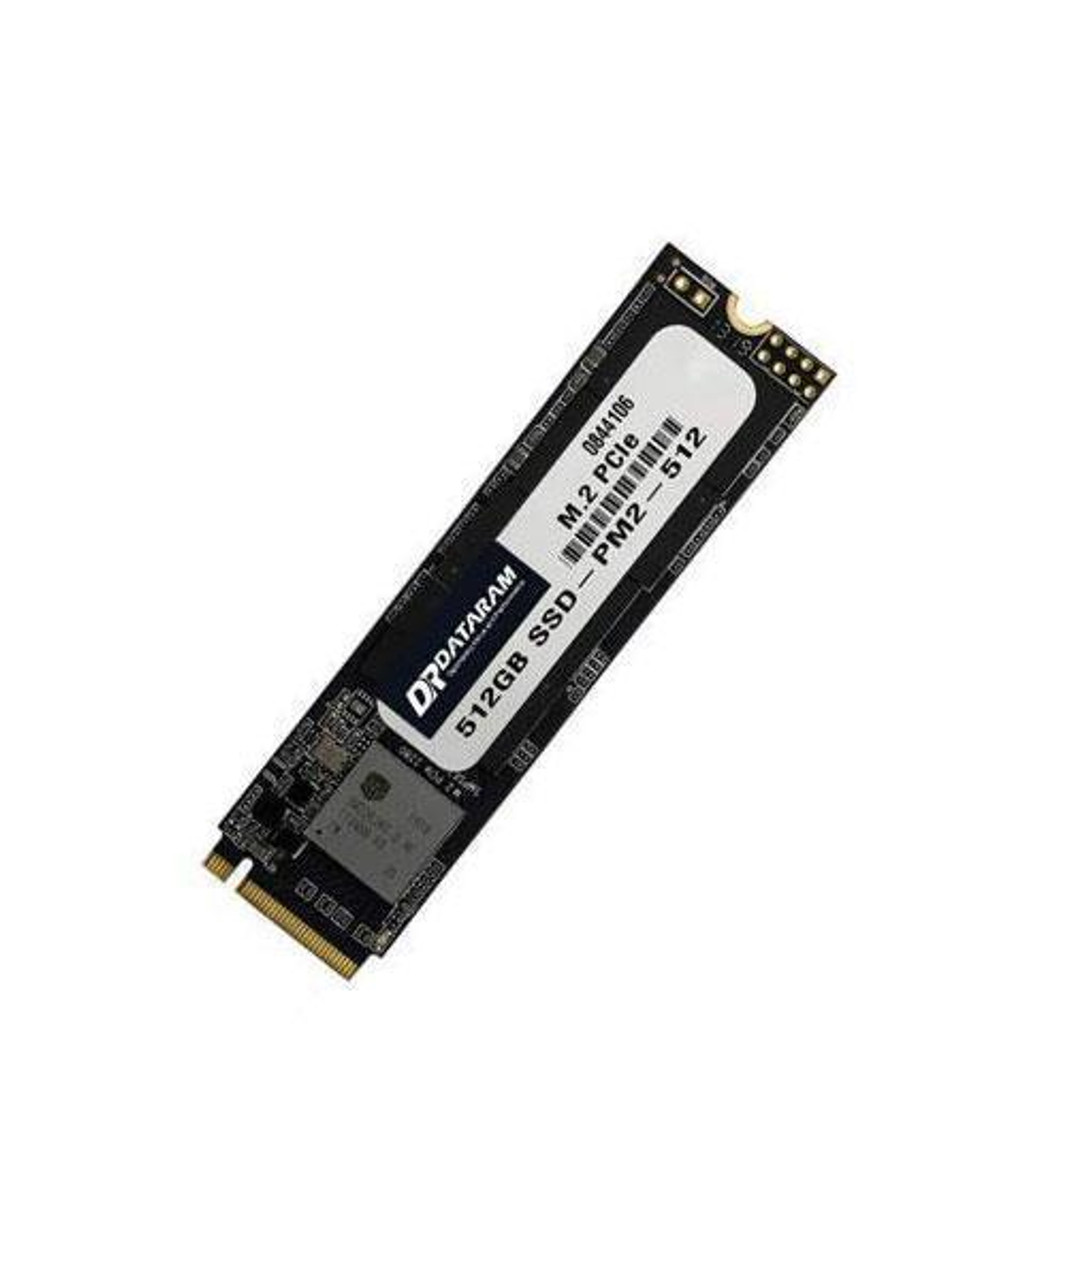 Dataram 512GB TLC PCI Express 3.0 x4 NVMe M.2 2280 Internal Solid State Drive (SSD)